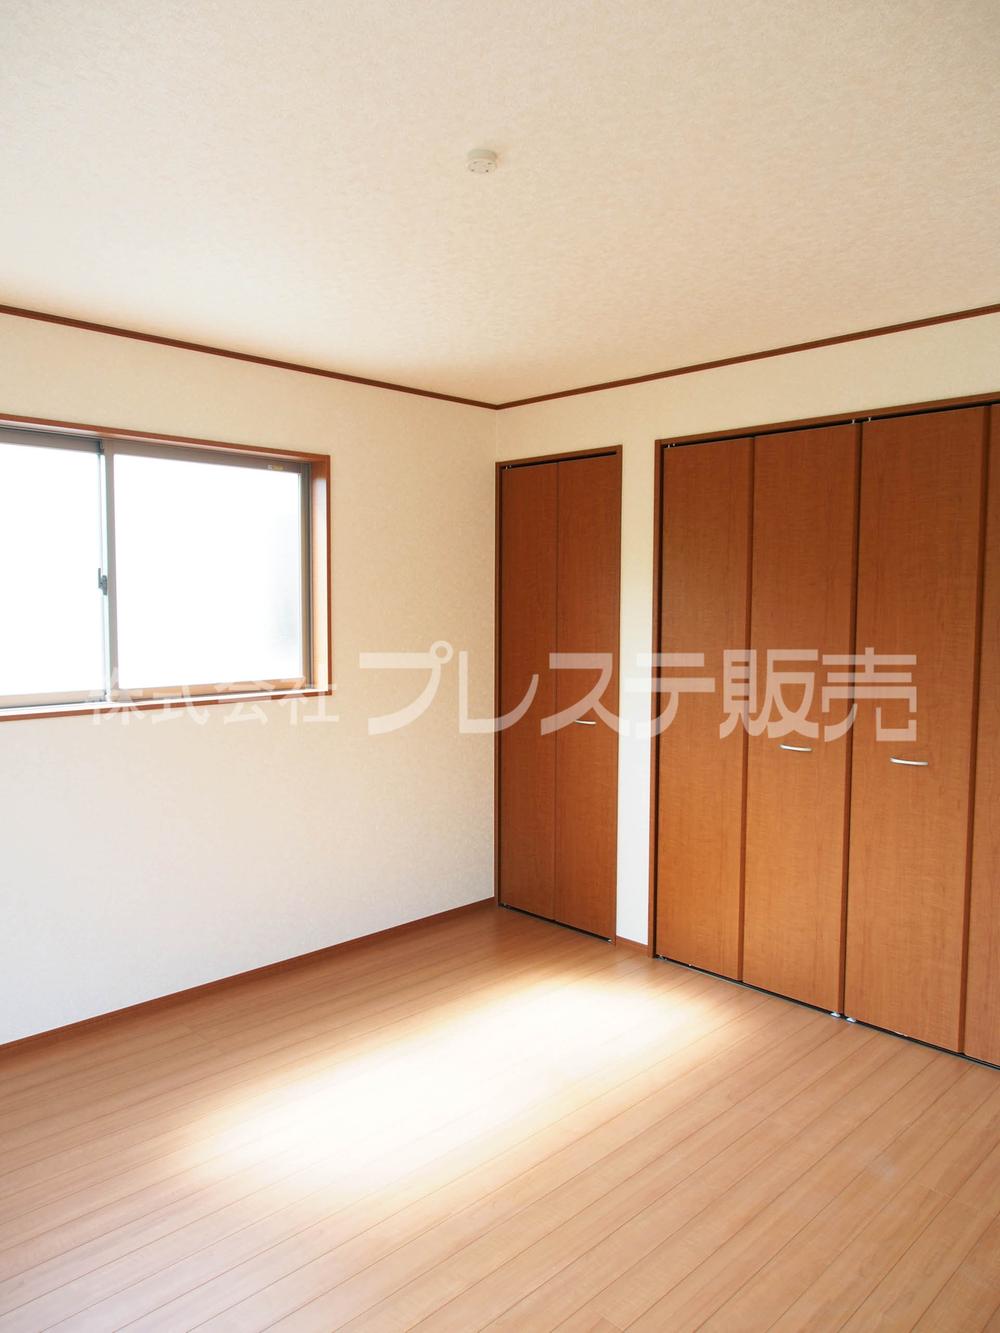 Non-living room. Local photo (No. 3 land 2 Kaikyoshitsu)